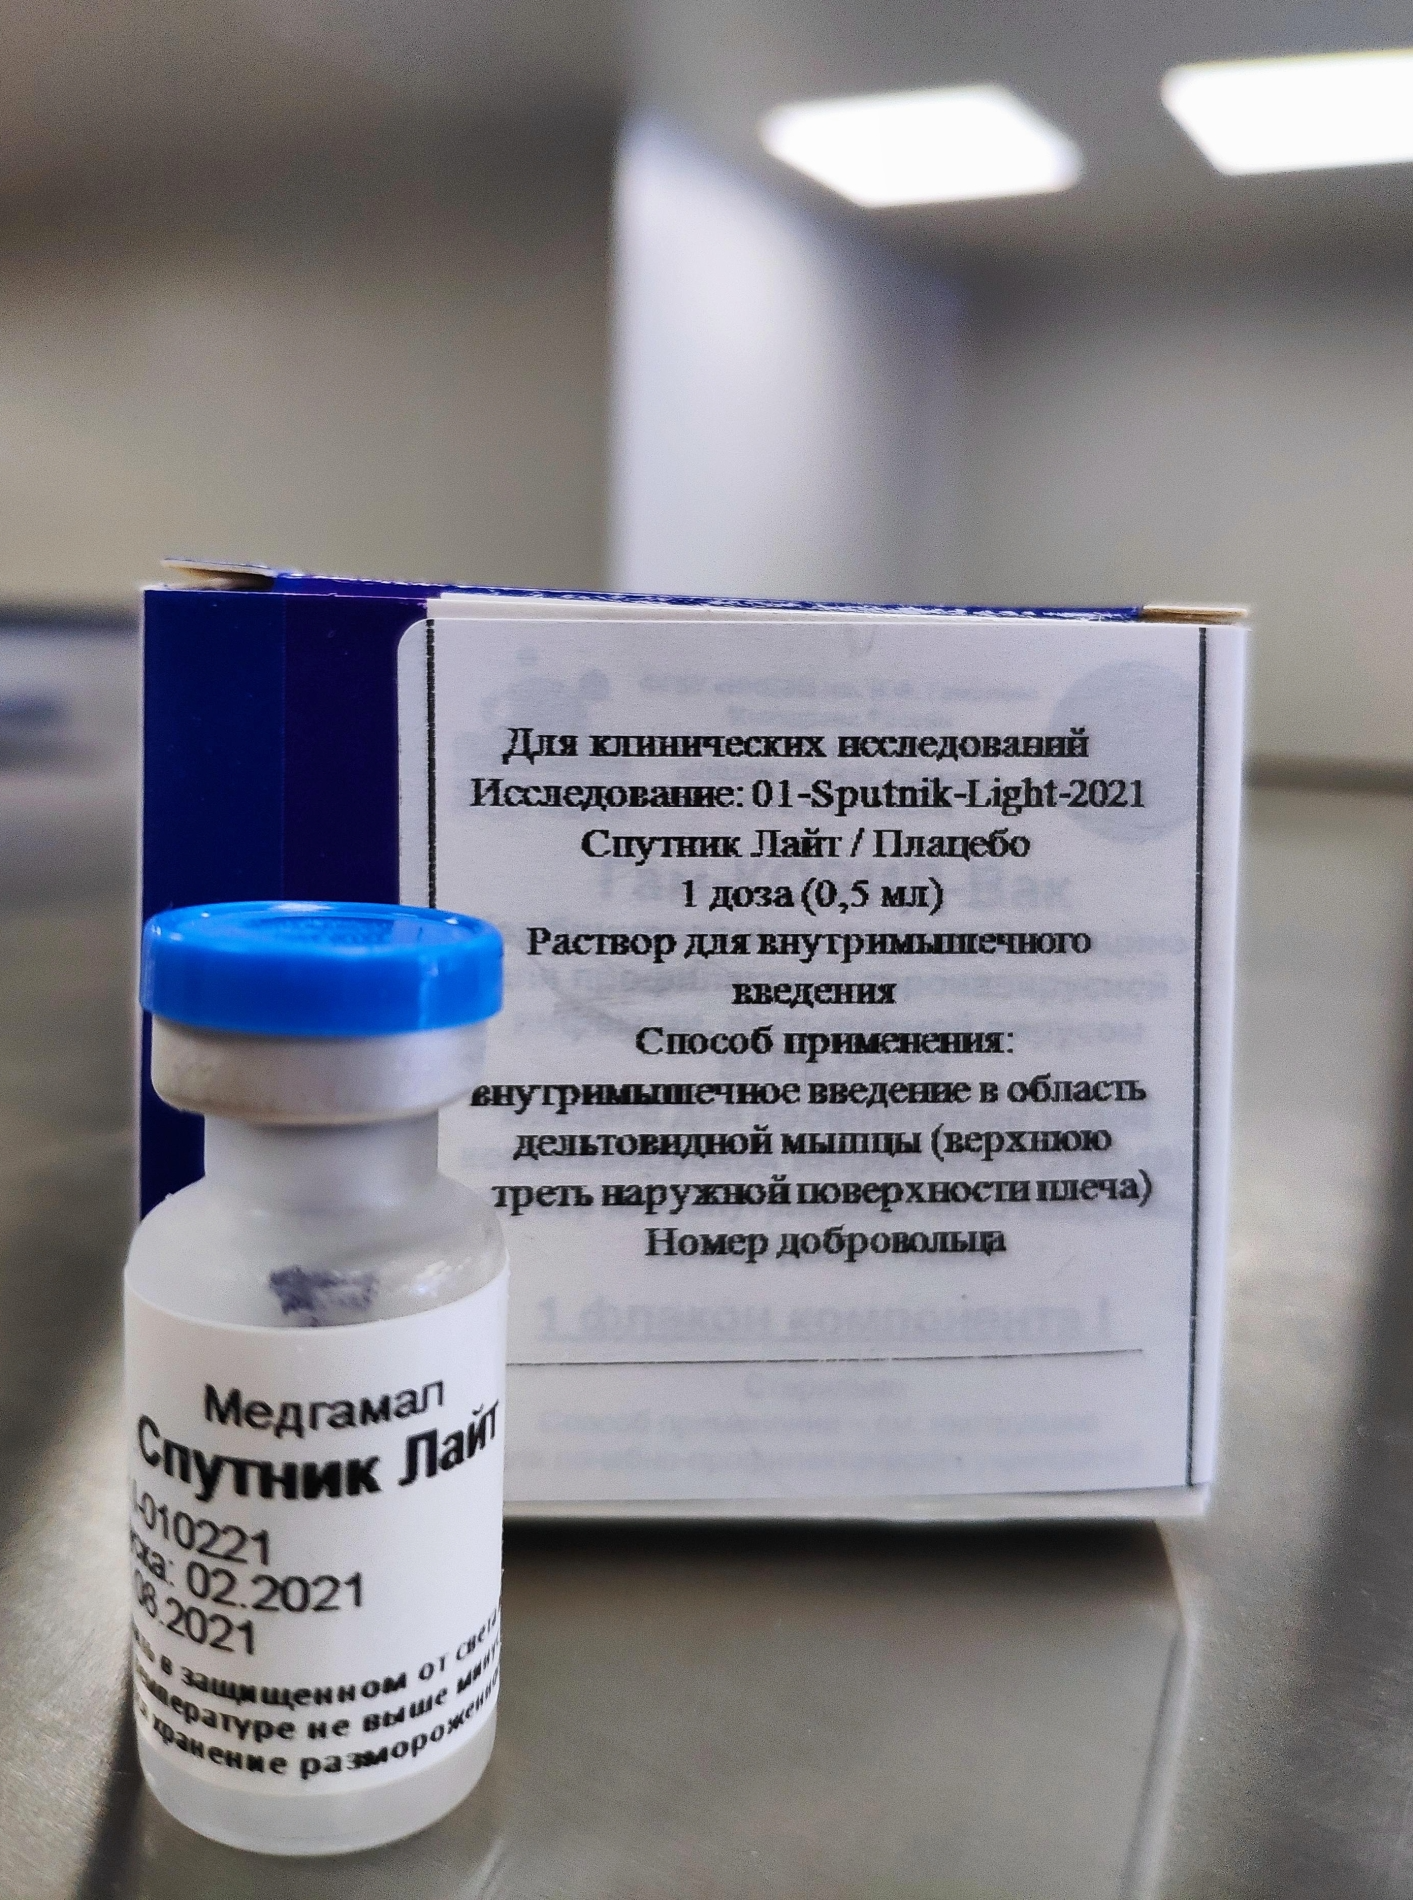 Российская вакцина "Спутник Лайт" зарегистрирована в Беларуси